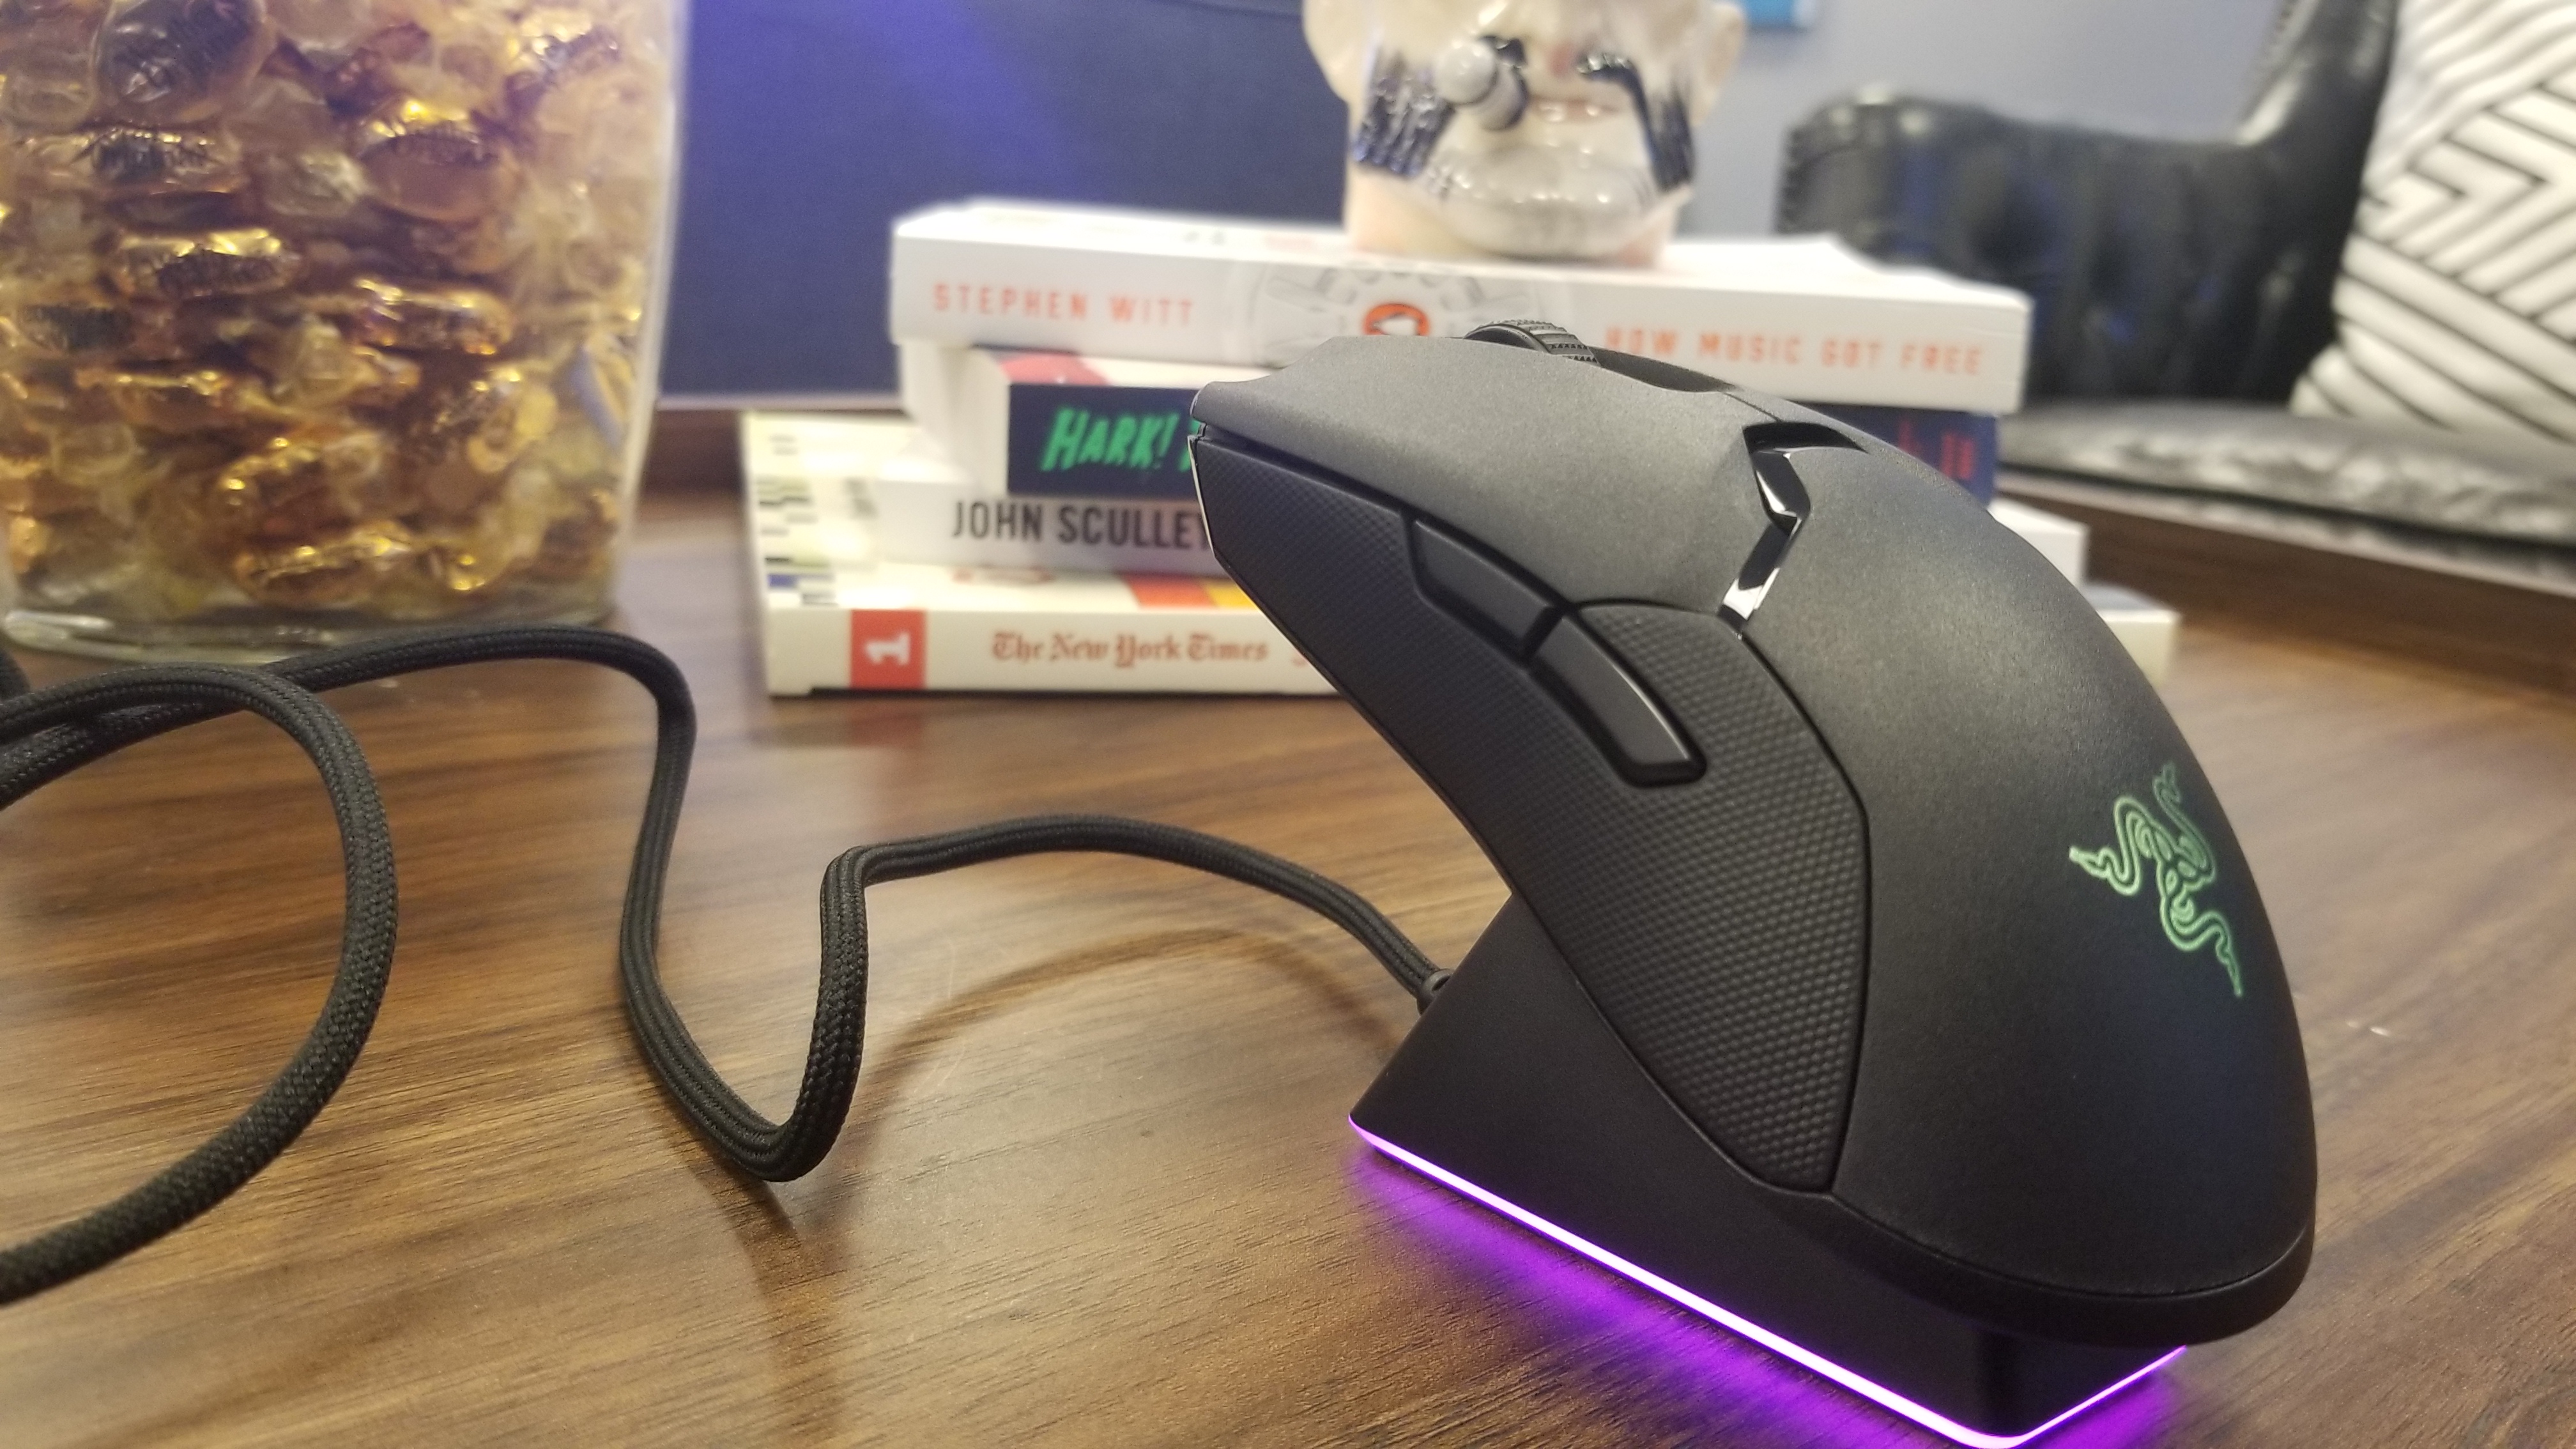 Razer Viper Ultimate Mouse